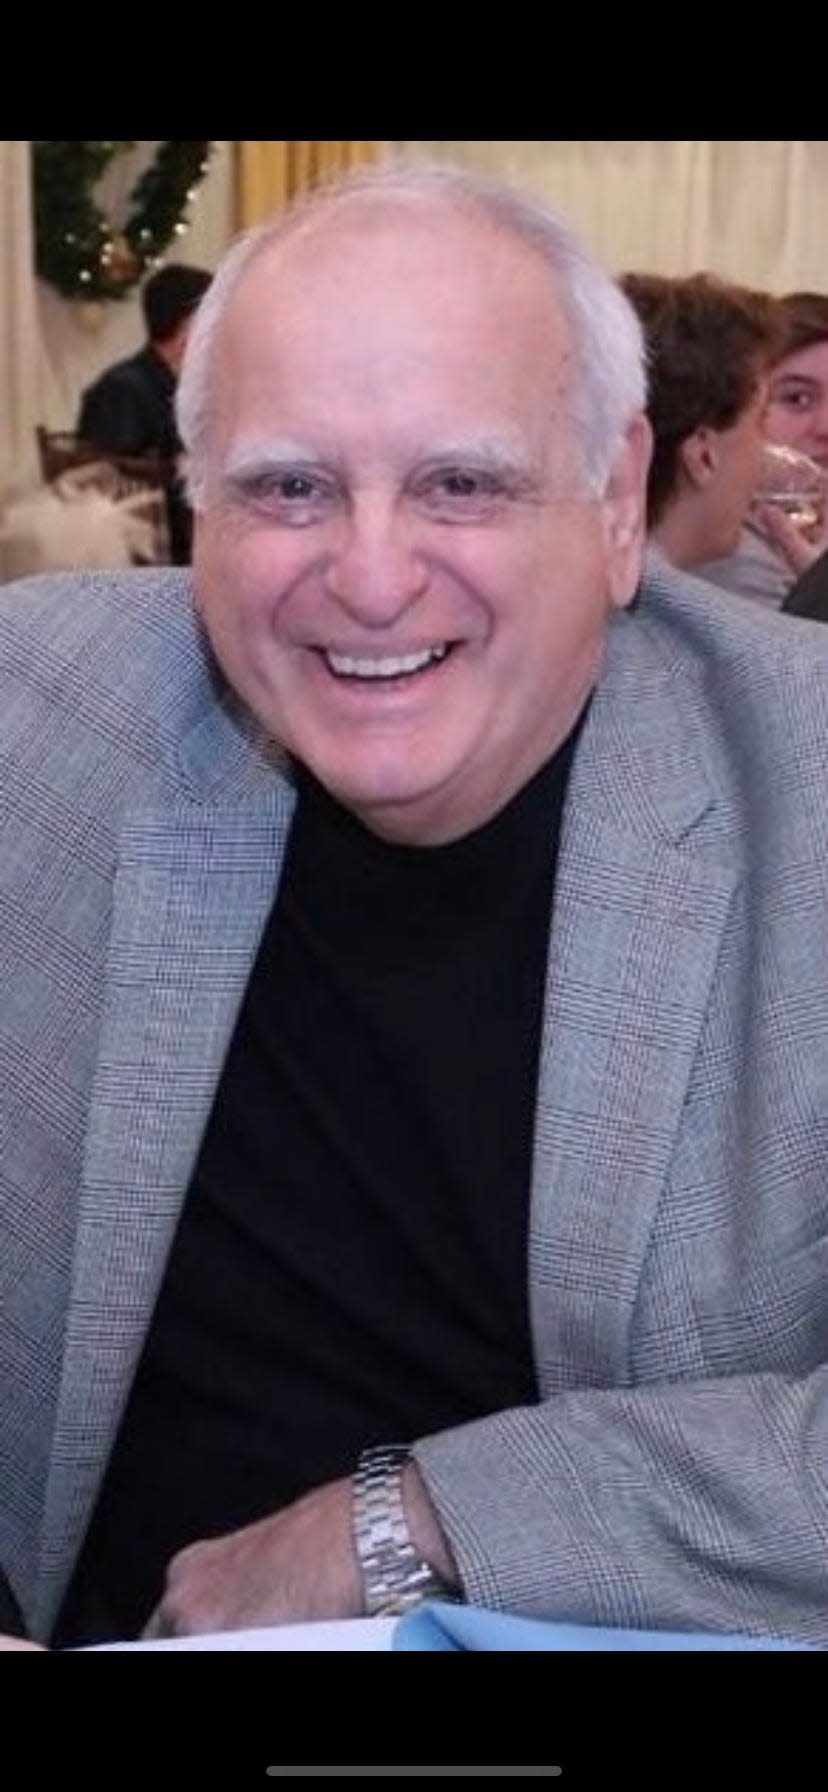 Daniel Alvino in West Islip, New York, in December 2019.